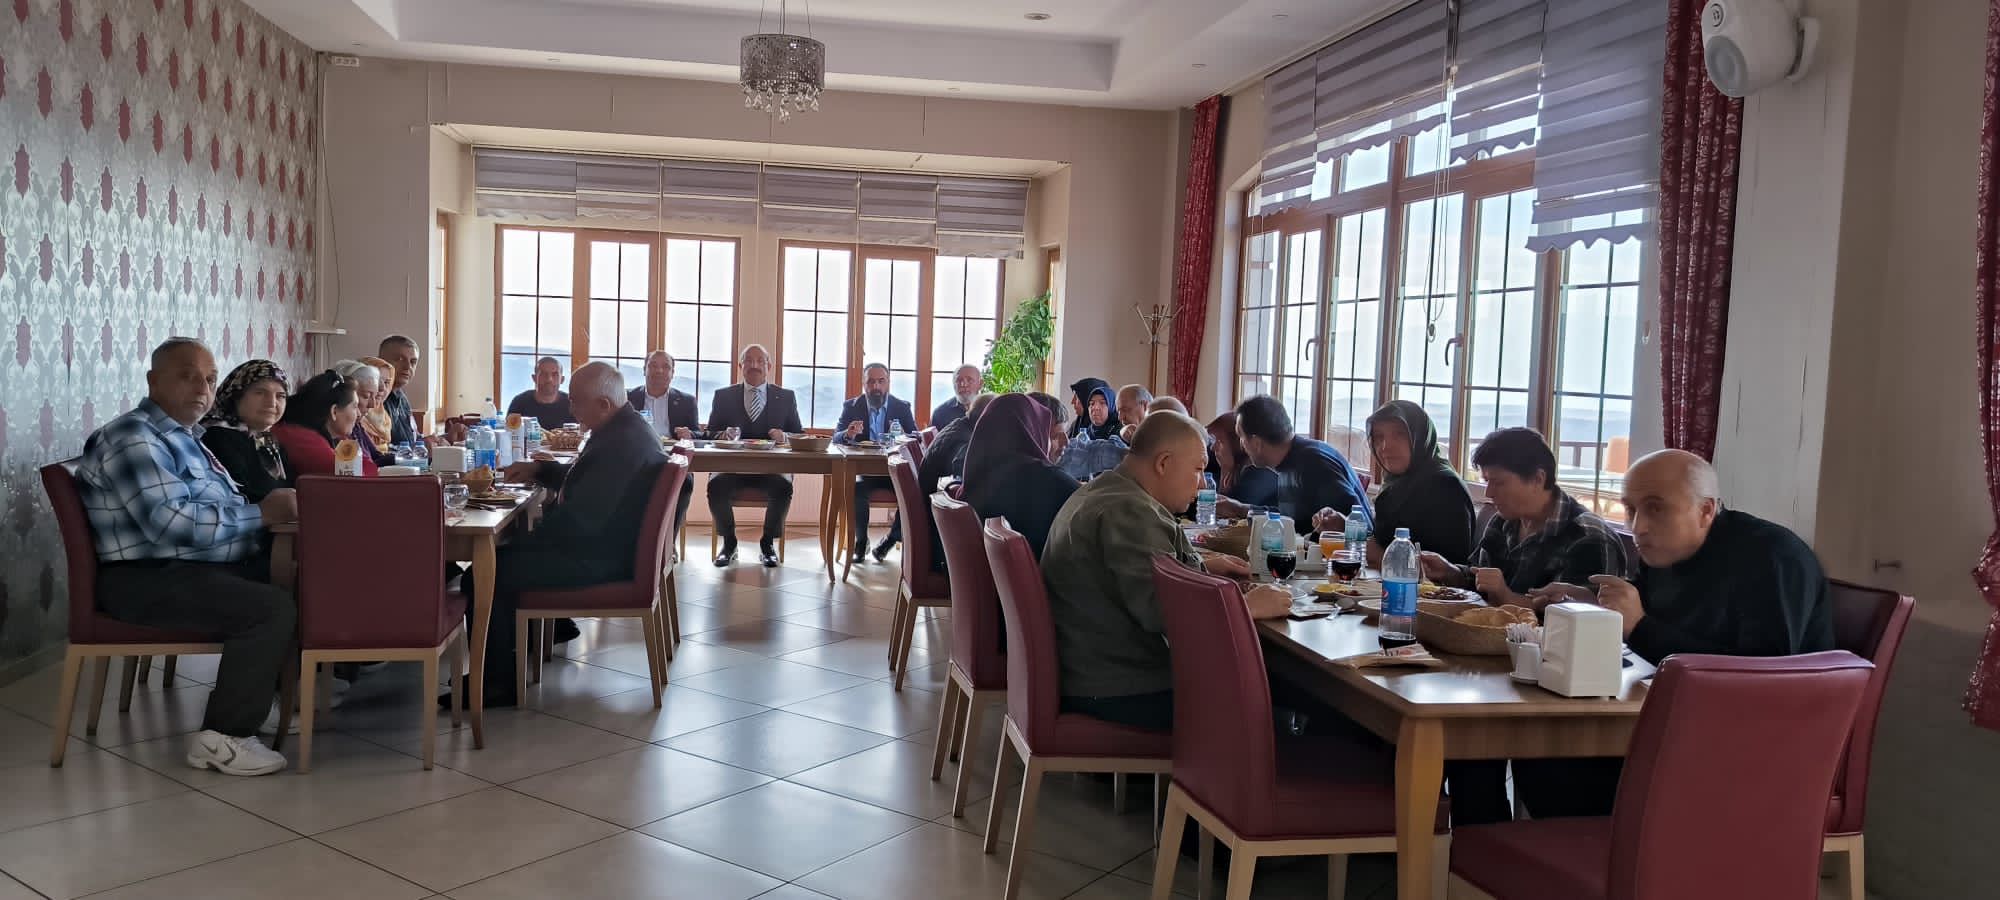 Yozgat Şahin Tepesi'nde şehit ailelerimizi öğle yemeğinde ağırlayan Yozgat İl Müdürü Abdullah NEŞELİ 'ye misafirperverlikleri ve hassasiyetleri için teşekkür ederiz.